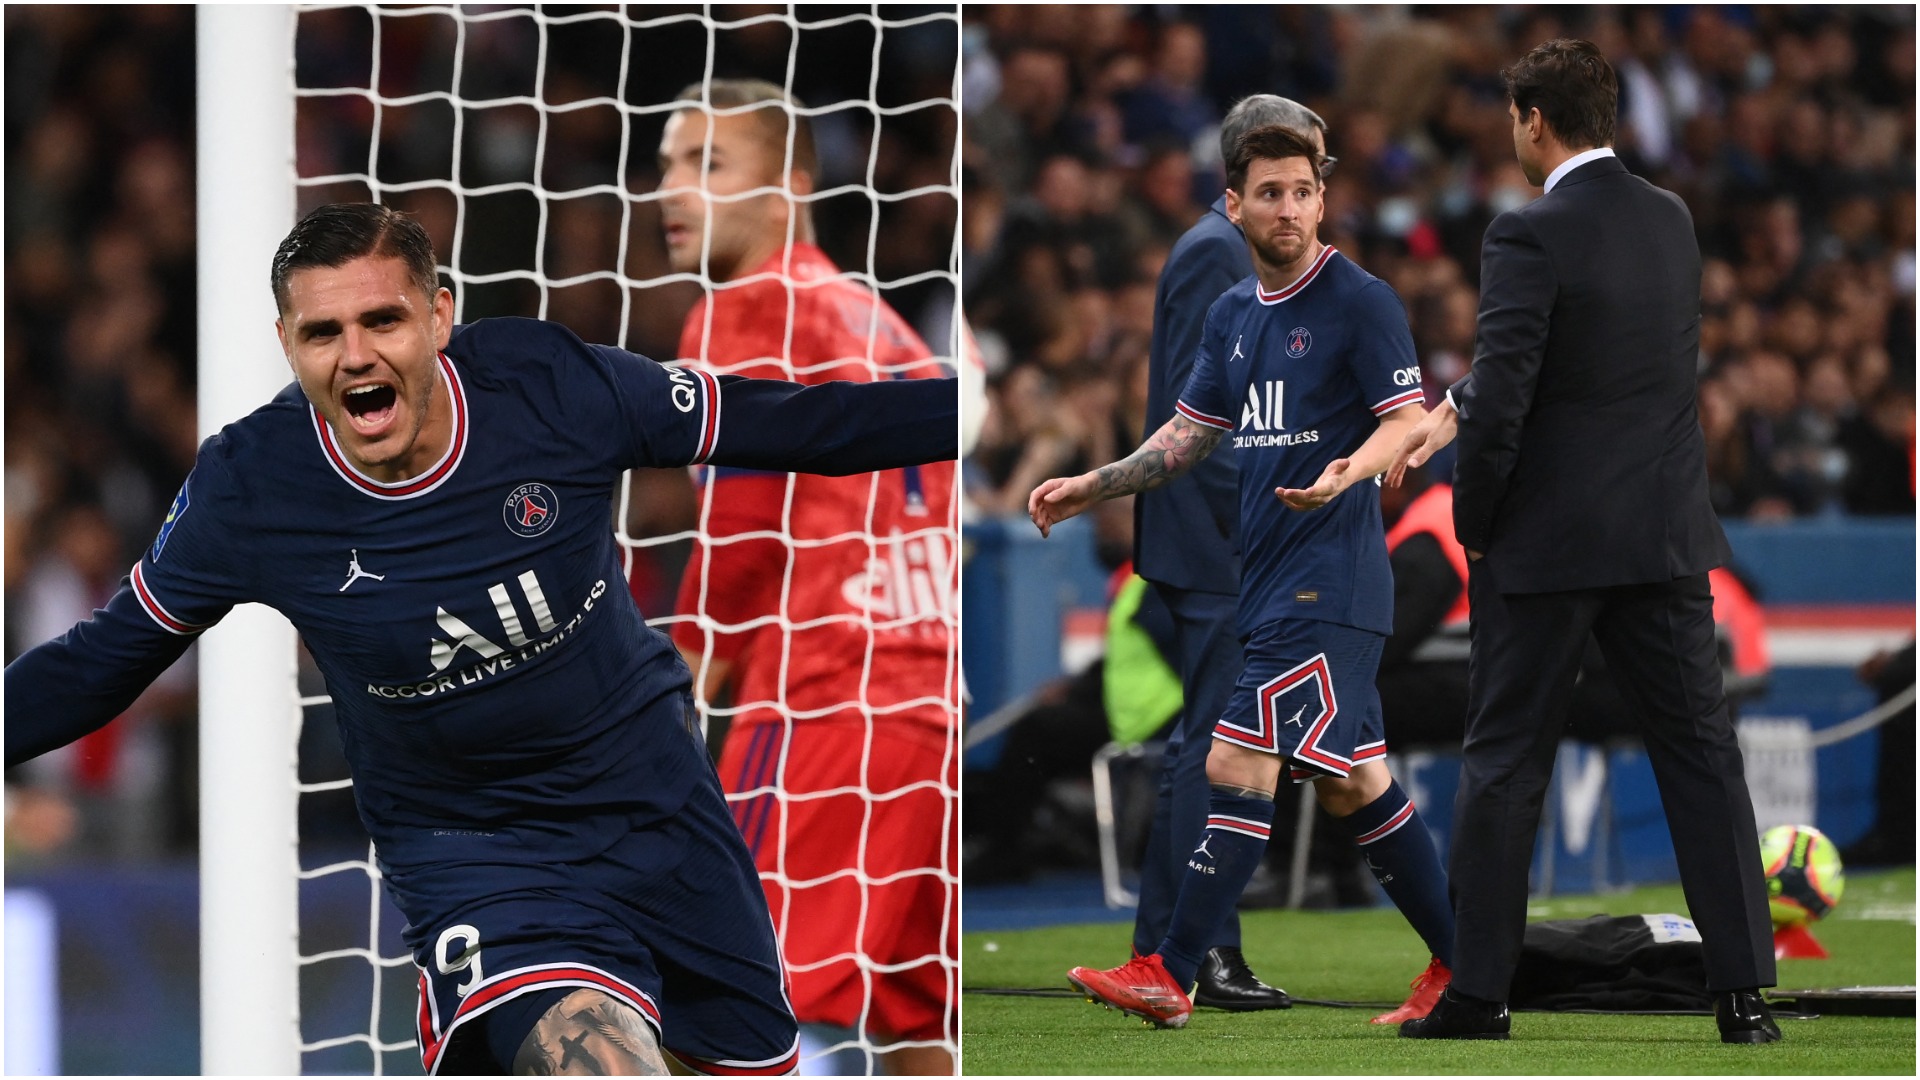 PSG - Lyon 2-1. Ce nebunie! Parizienii au întors scorul. Icardi, gol în minutul 90+3. Messi, nervos la înlocuire